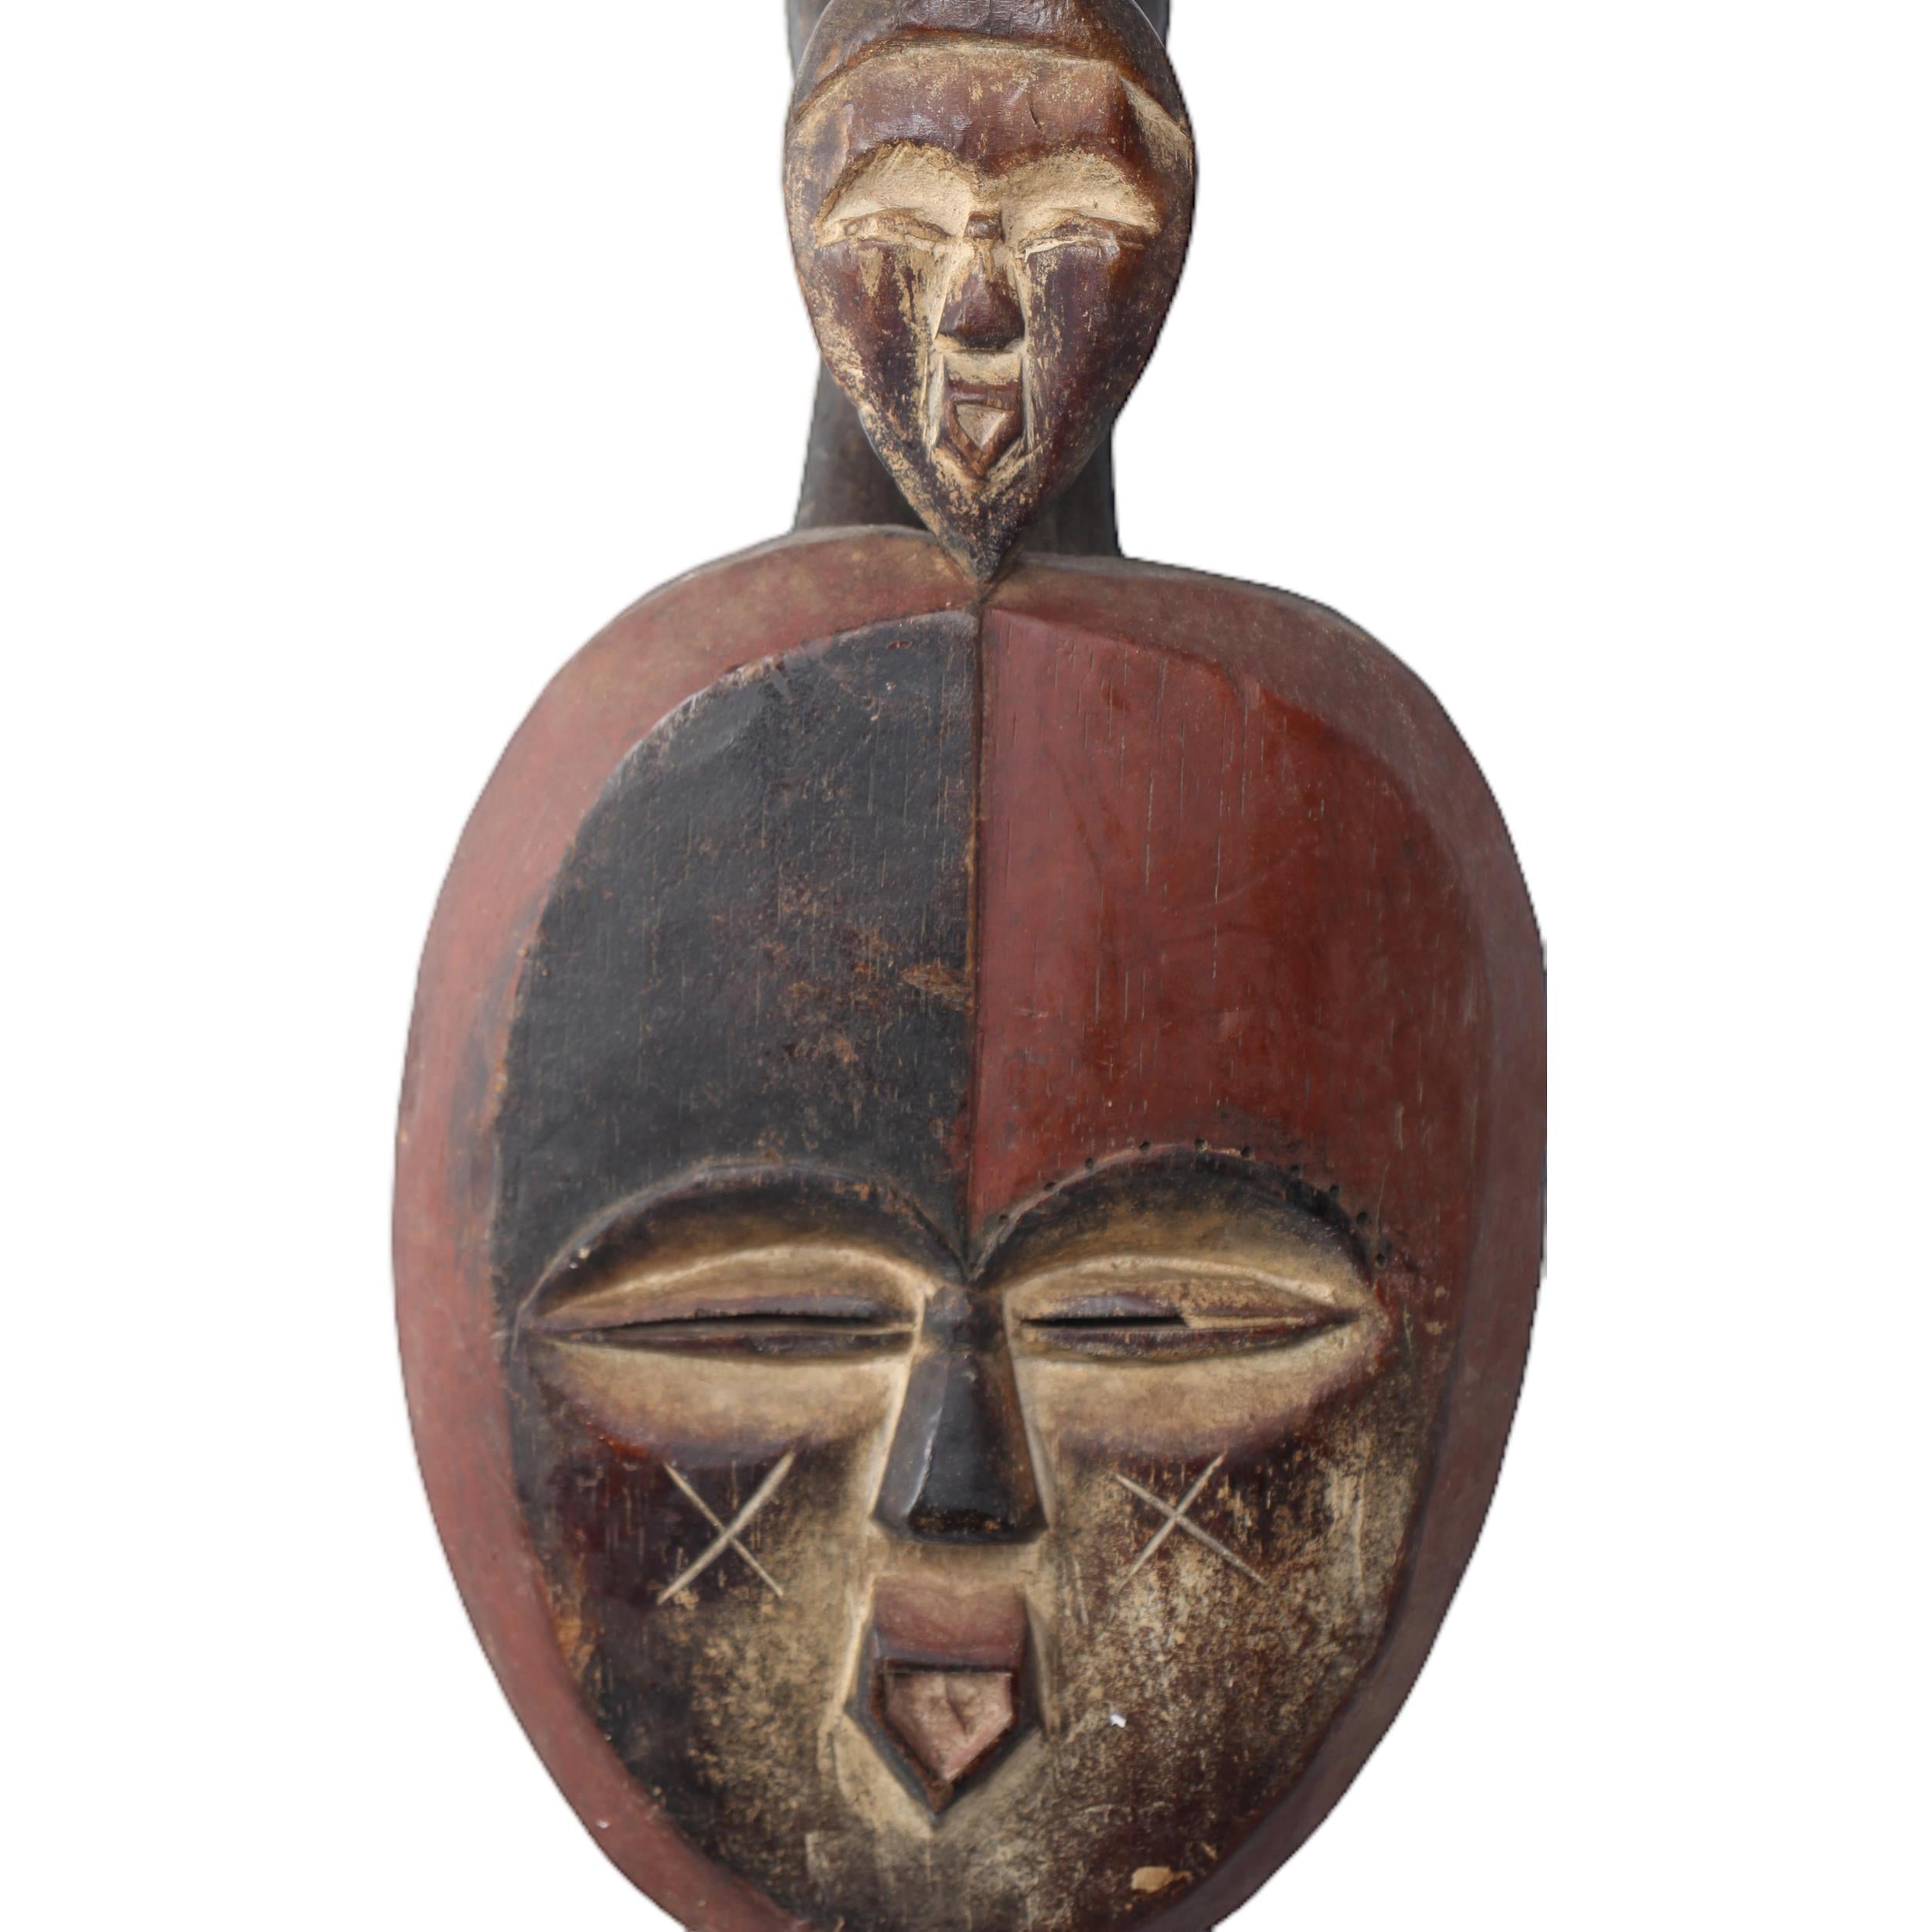 Kwele Tribe Mask ~17.3" Tall - Mask